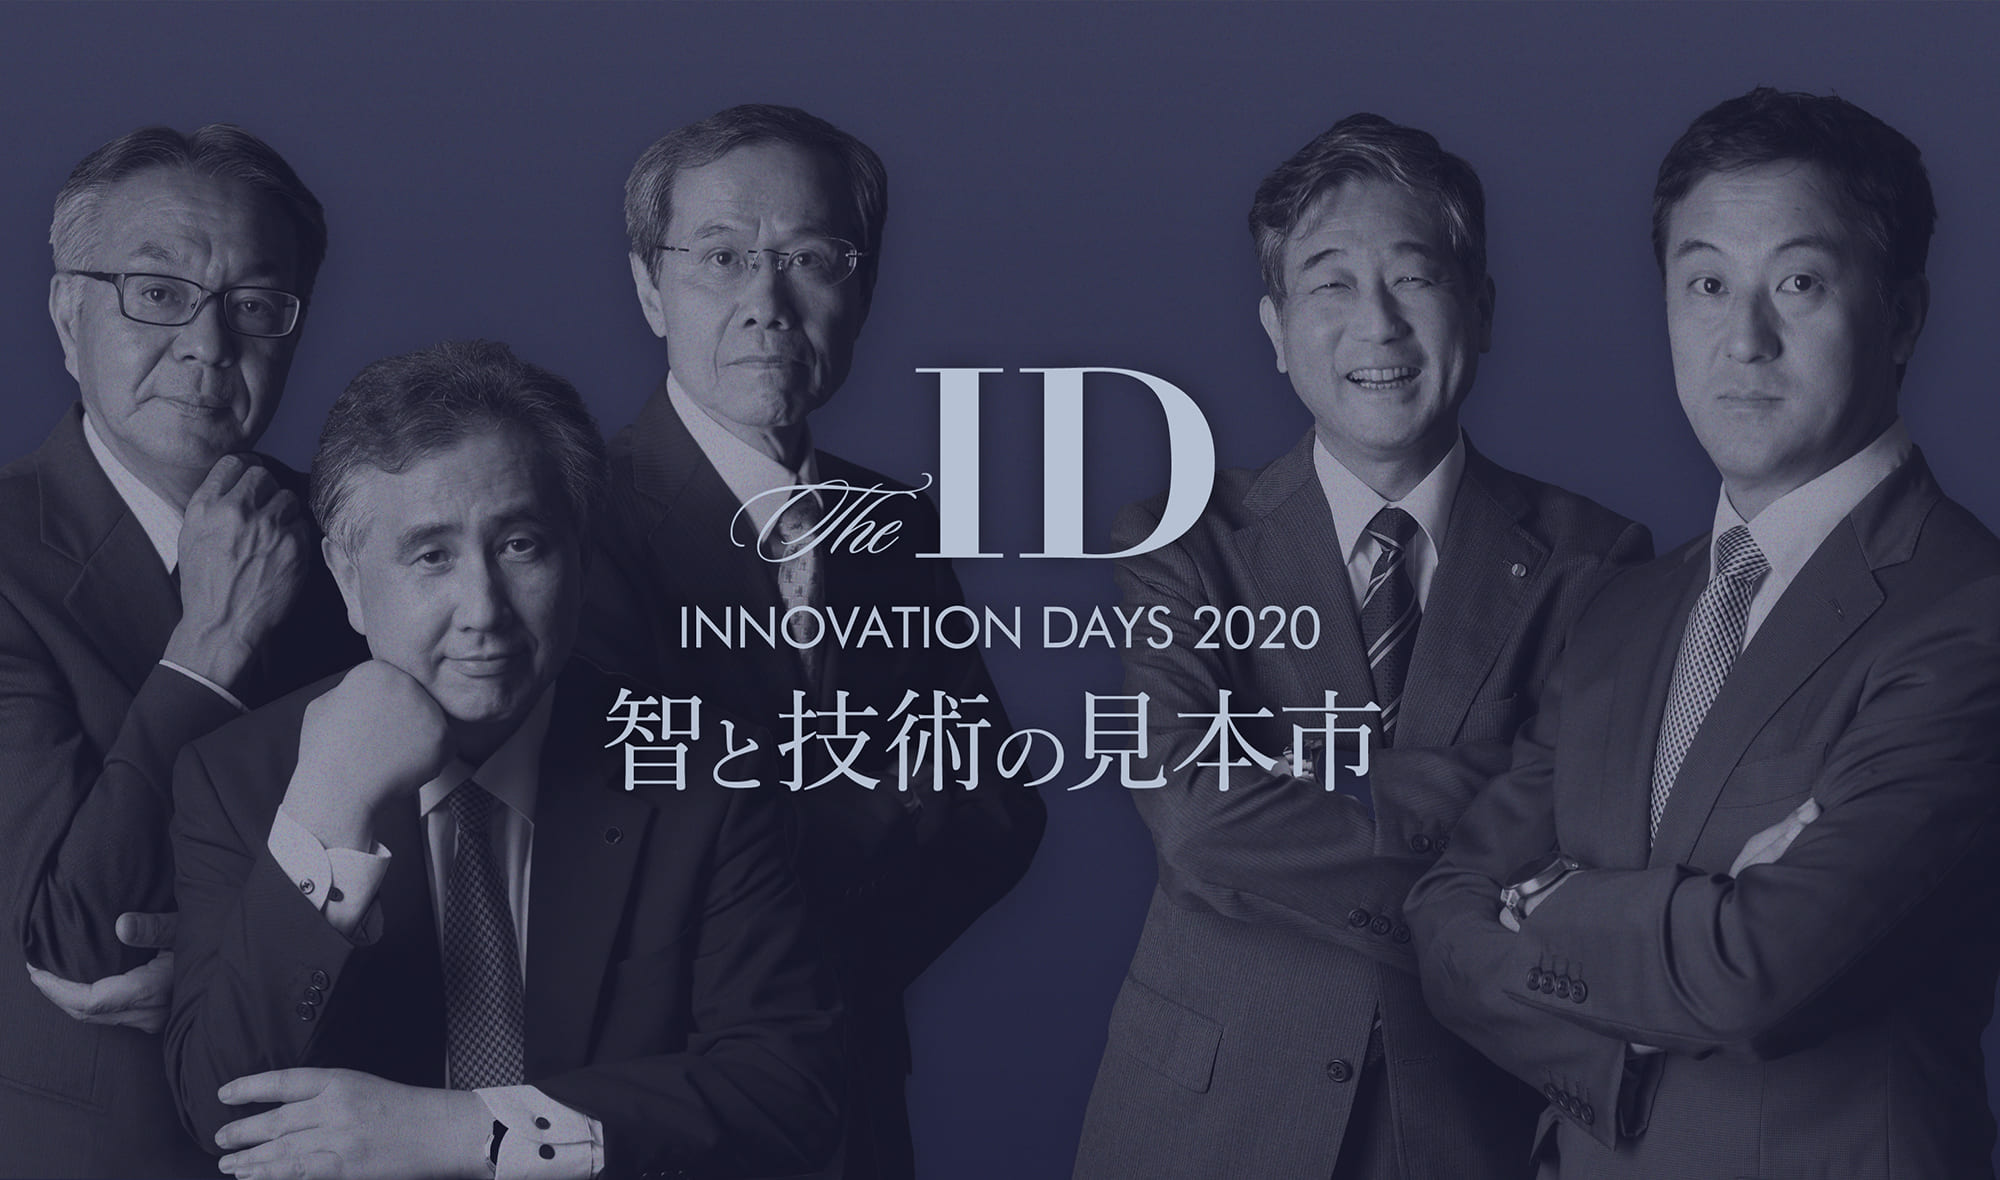 大阪工業大学イノベーションデイズ 智と技術の見本市 アーカイブ Innovation Days Archive